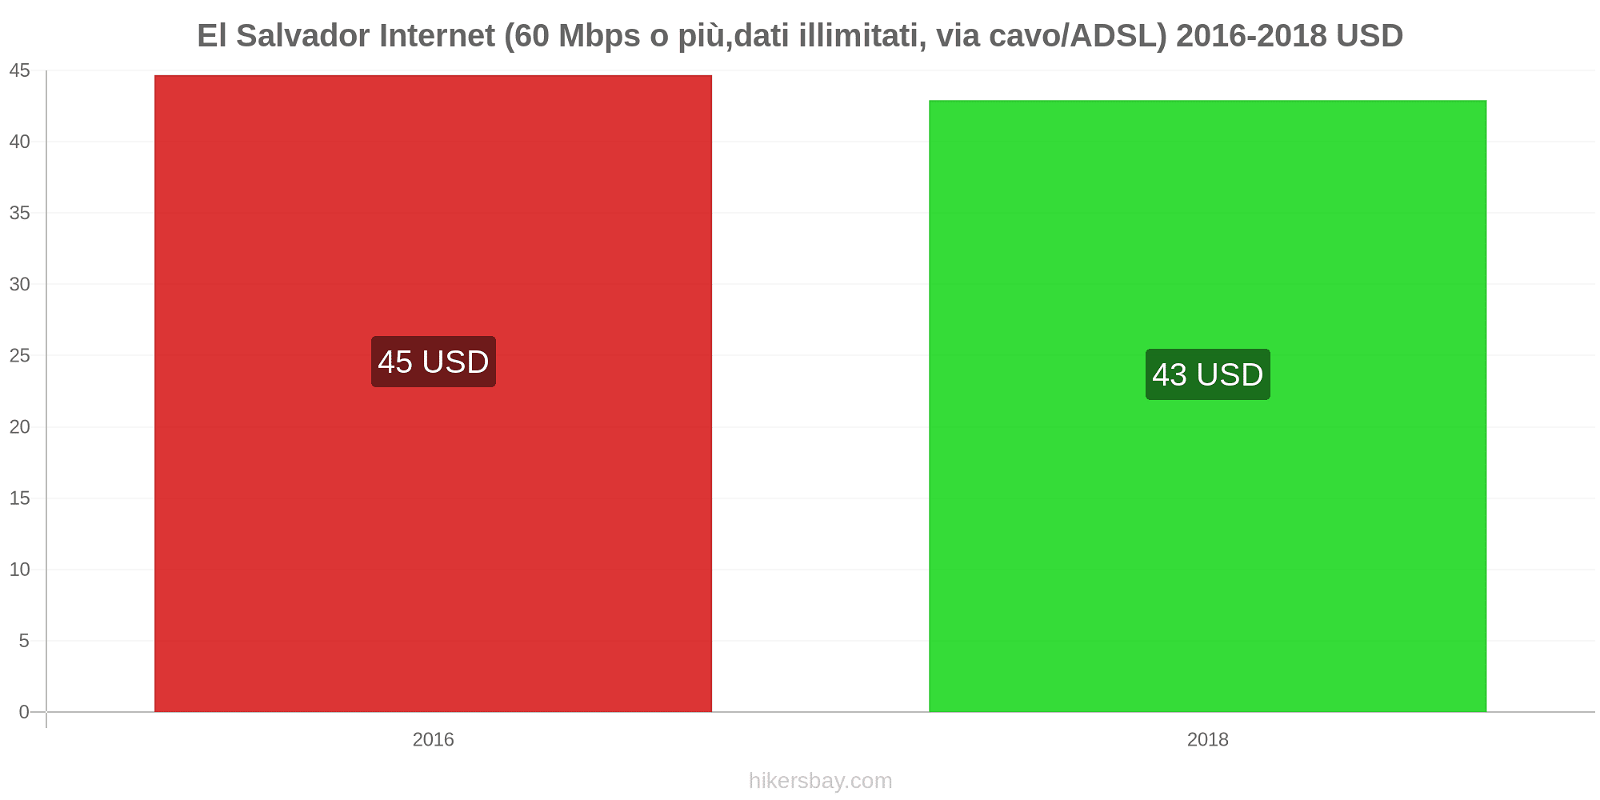 El Salvador cambi di prezzo Internet (60 Mbps o più, dati illimitati, cavo/ADSL) hikersbay.com